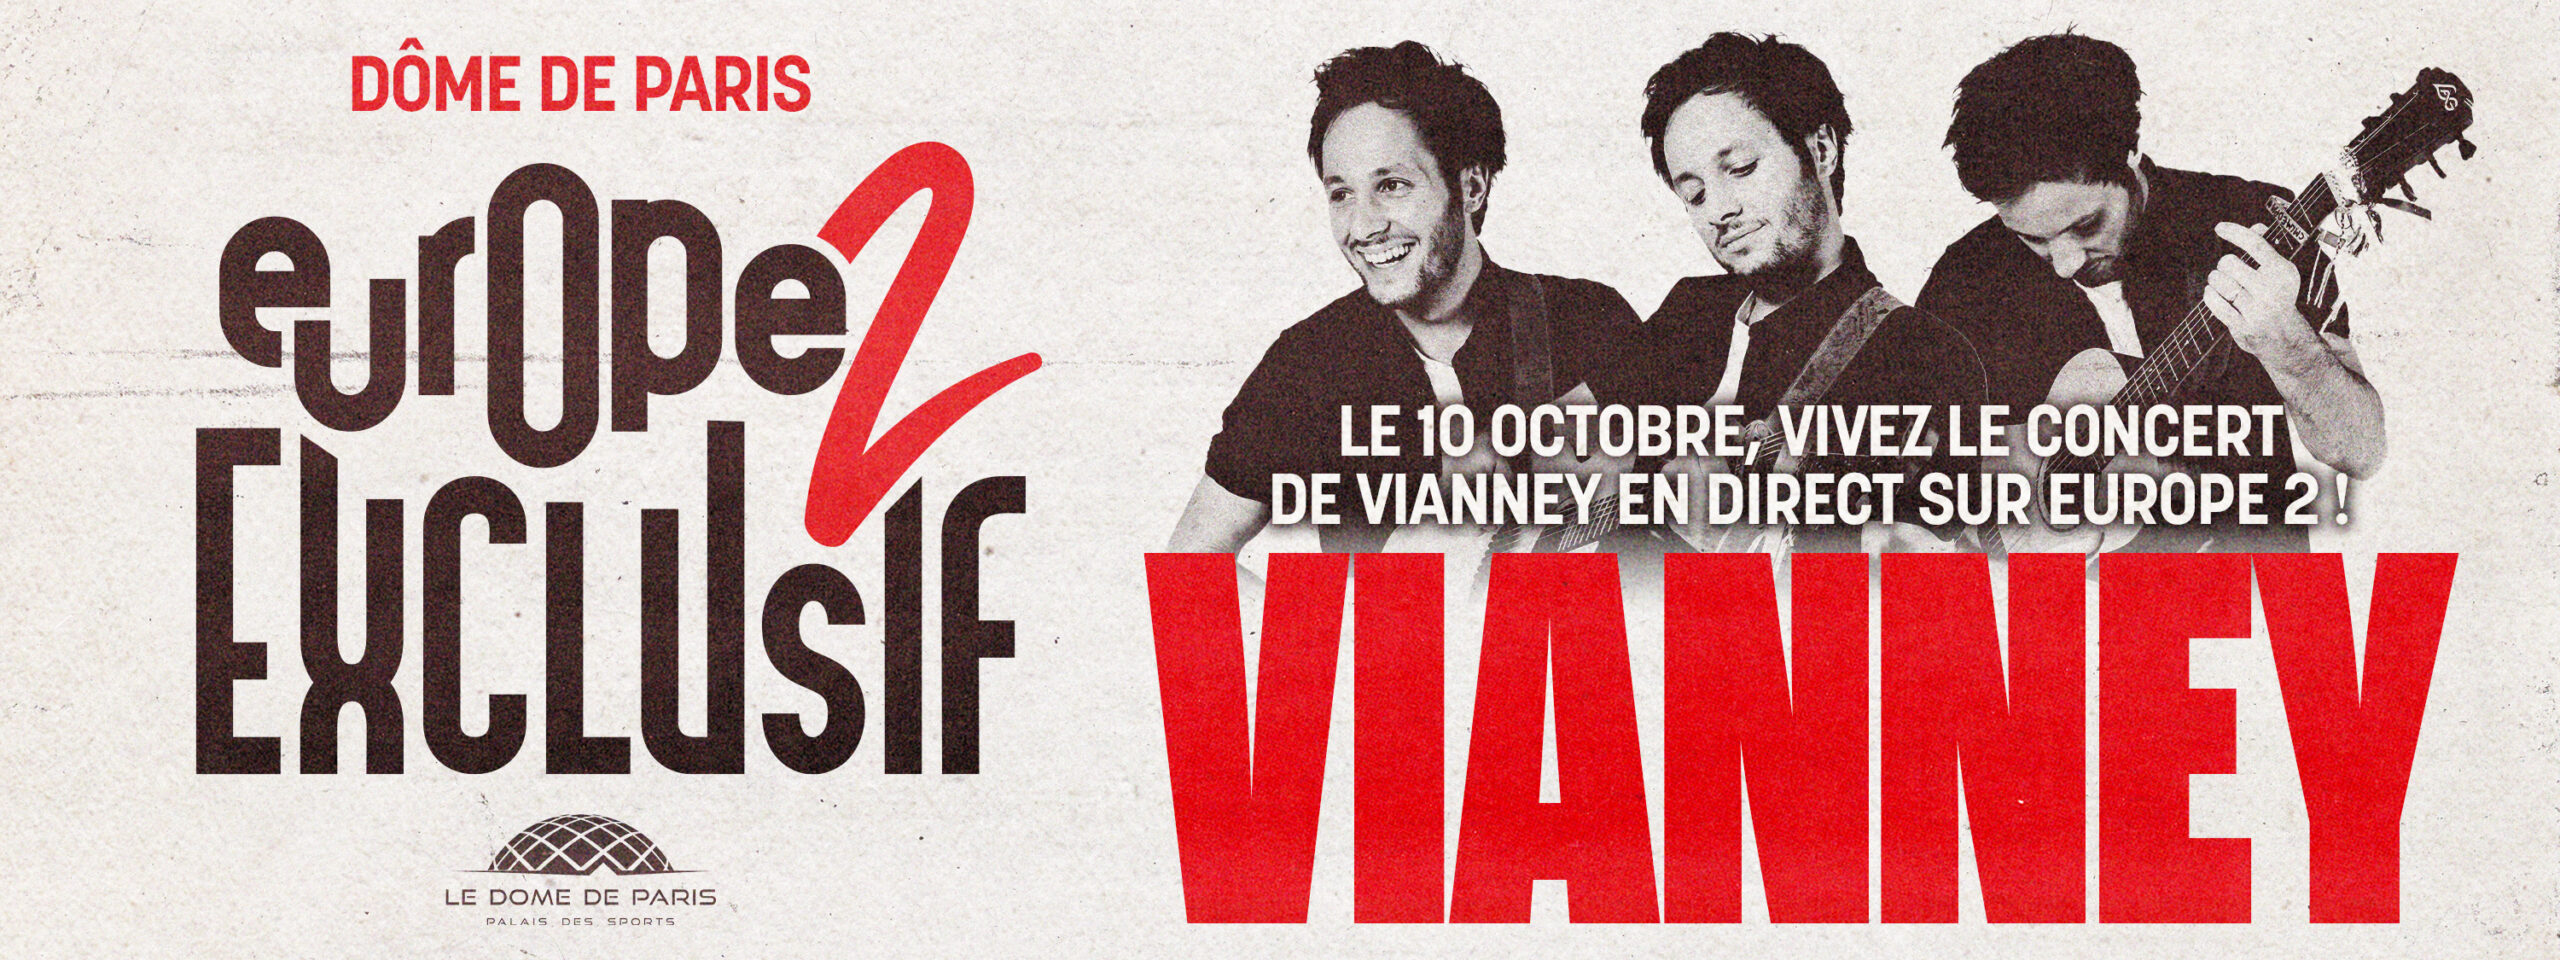 Vivez l'Europe 2 exclusif de Vianney le 10 octobre au Dôme de Paris !